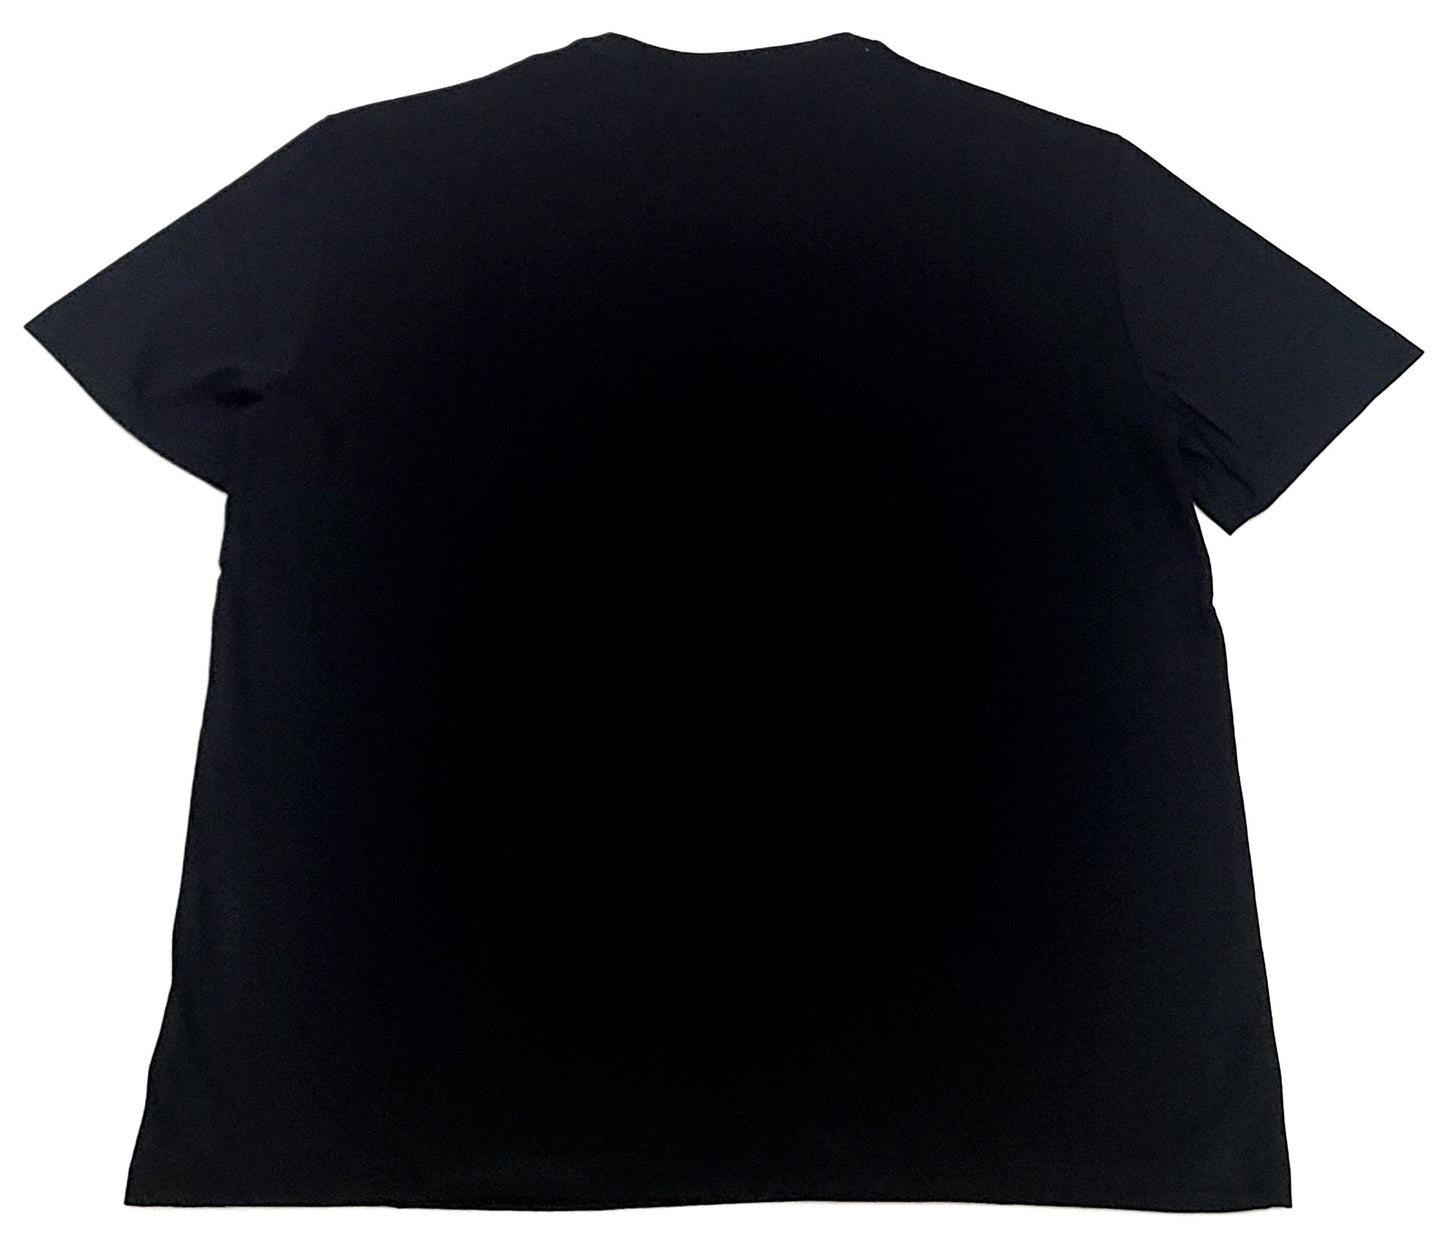 Armani Exchange T-shirt COLOR BLACK SIZE L (ORIGINAL WITH TAGS)